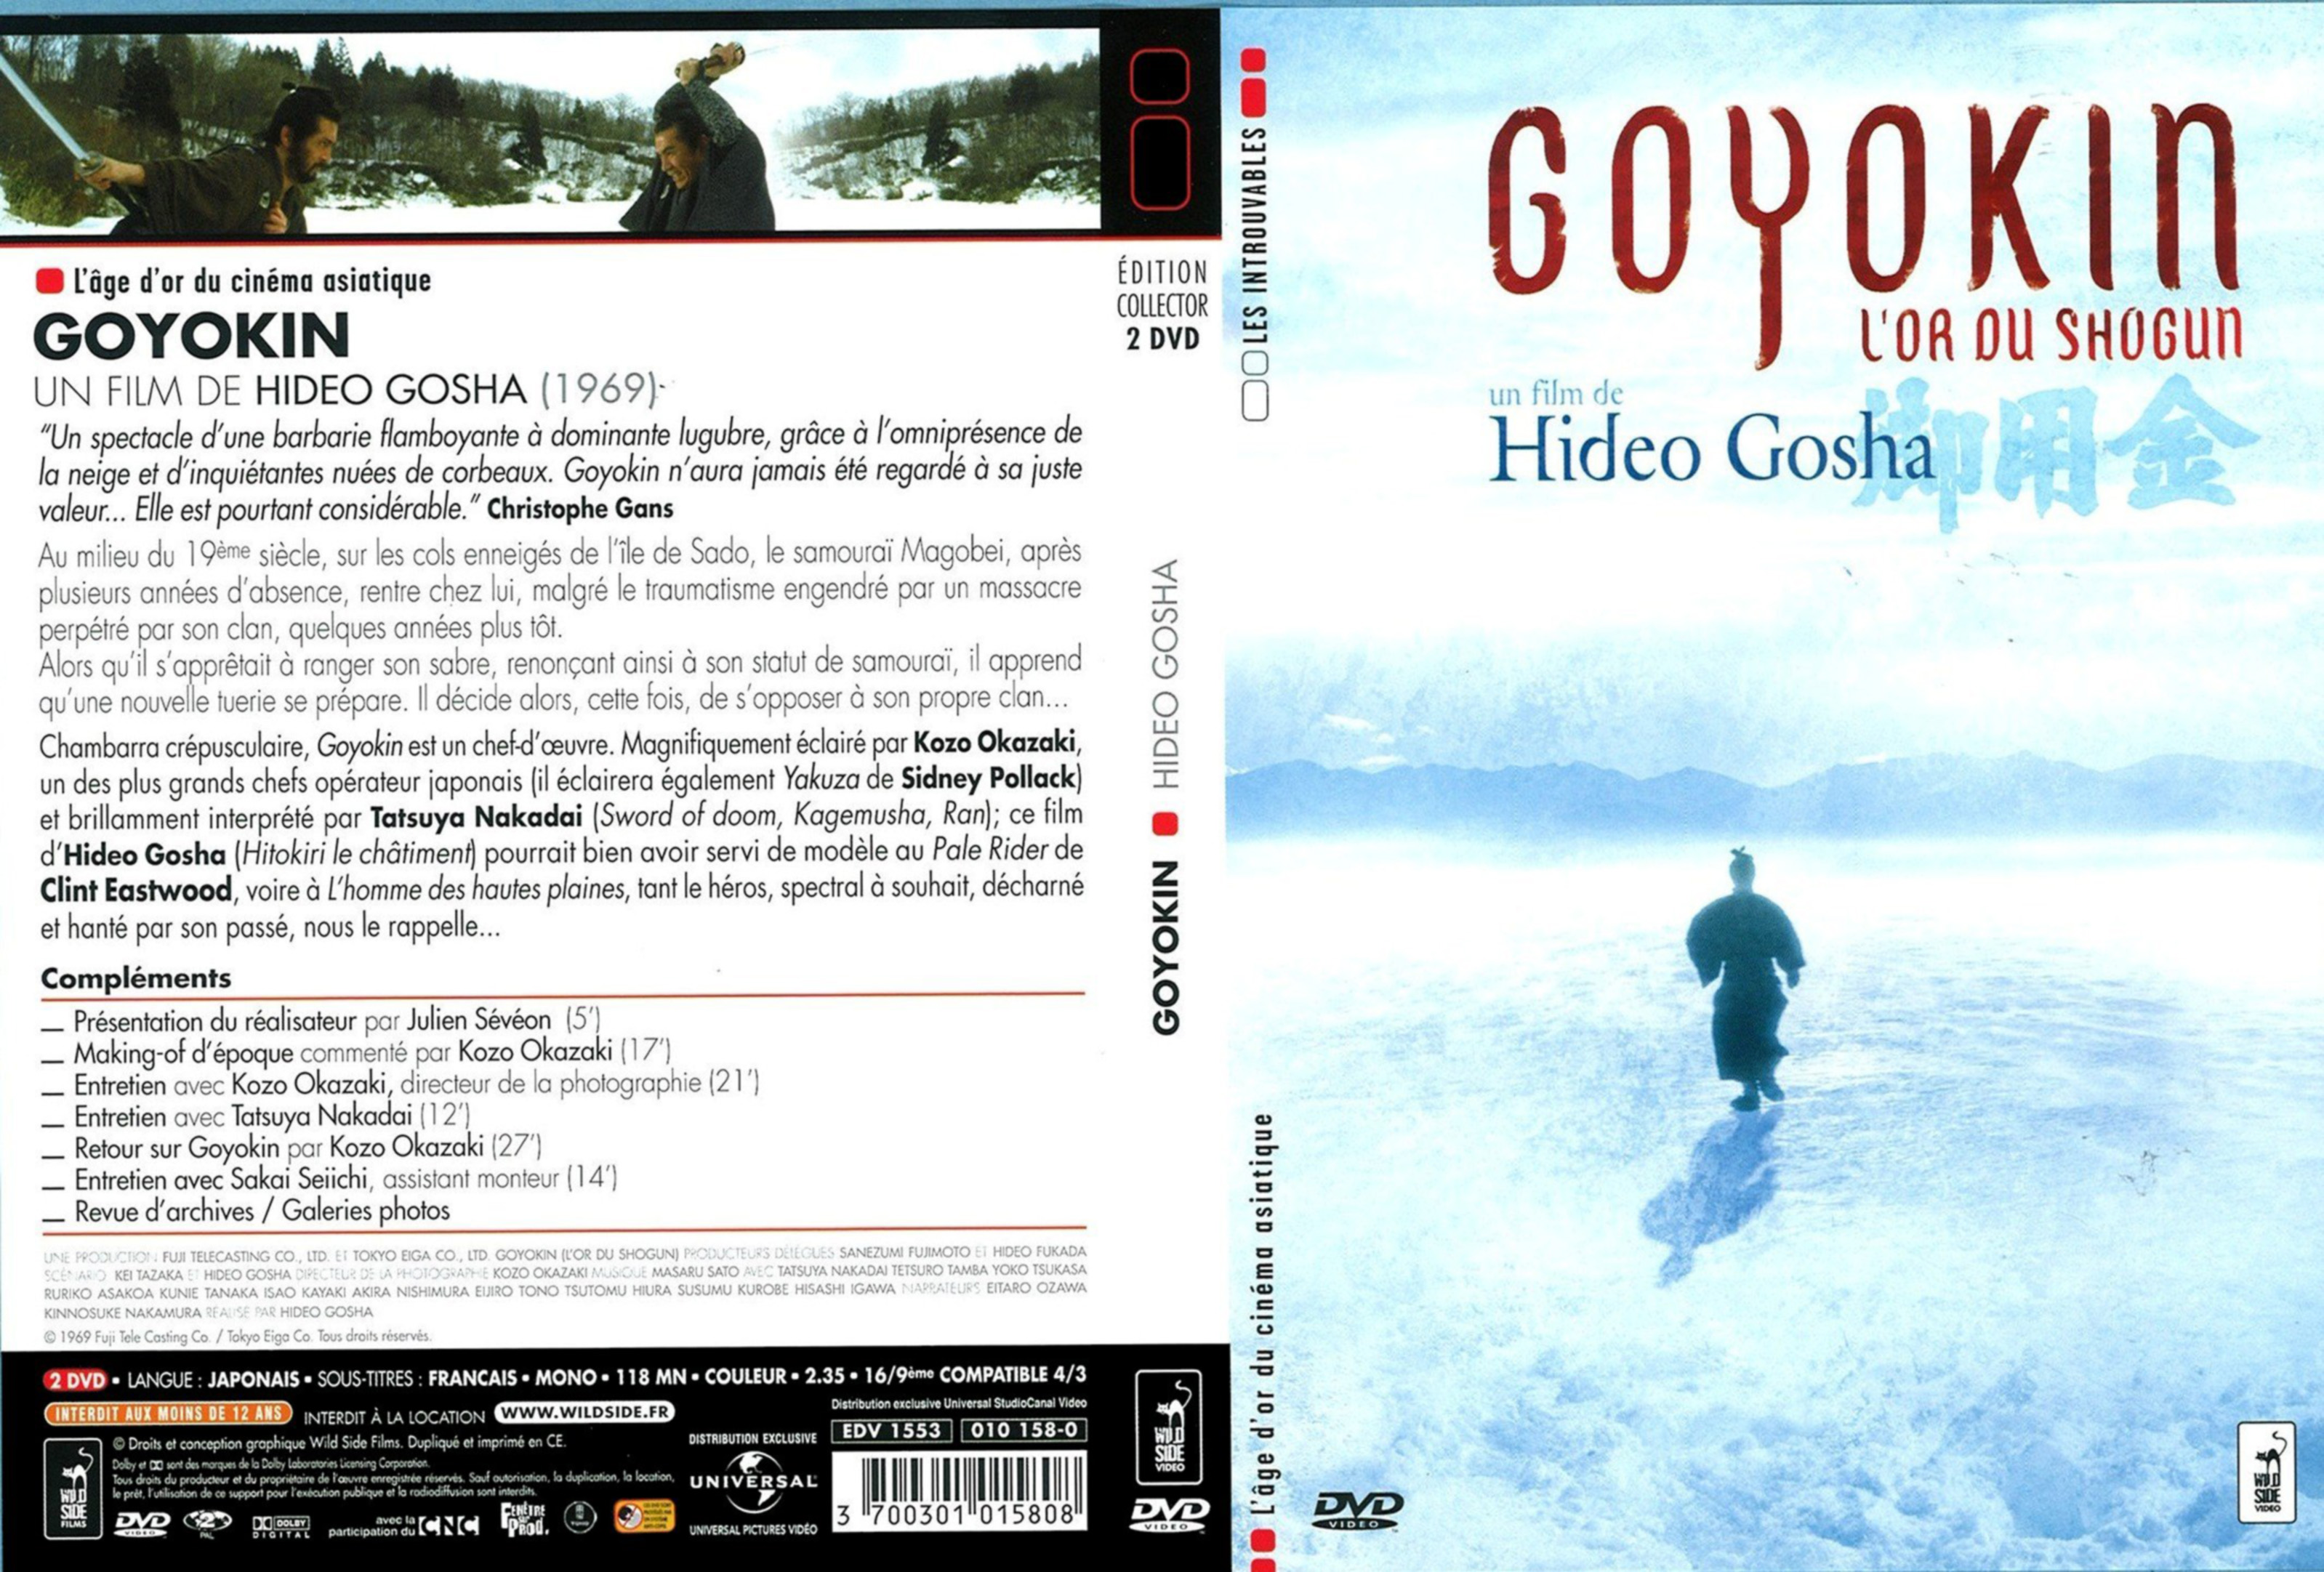 Jaquette DVD Goyokin v2